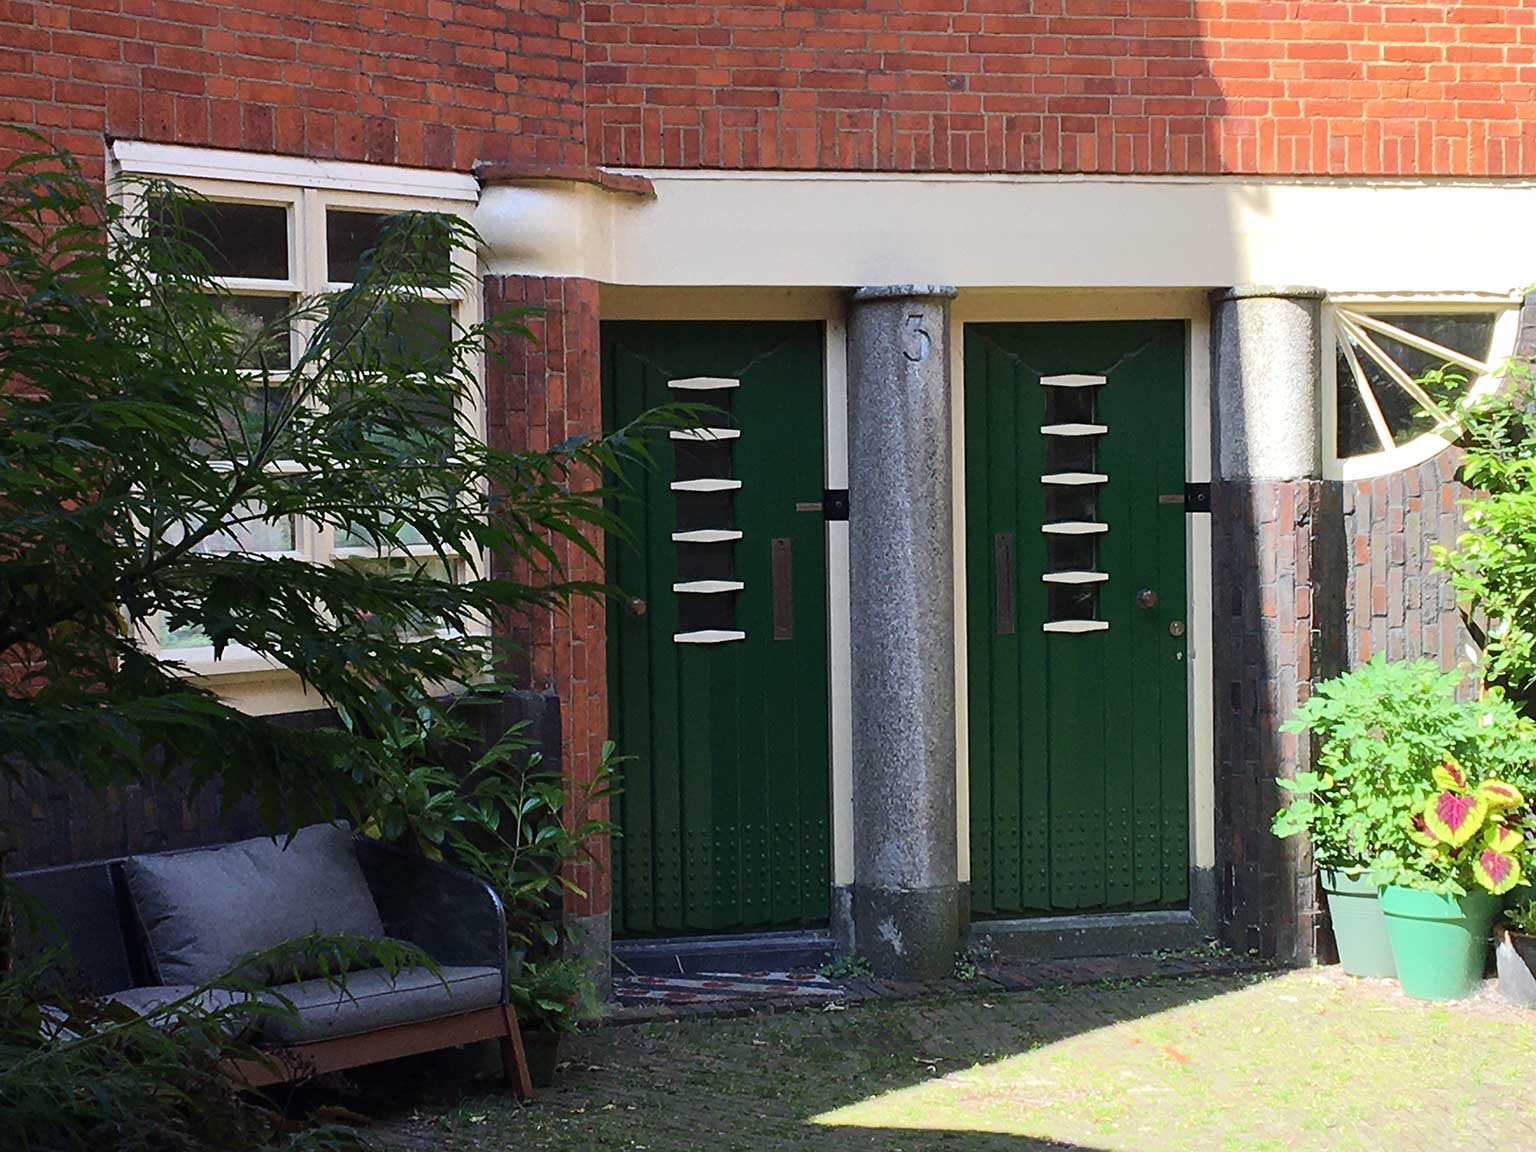 Housing block Het Schip, Amsterdam, apartment doors in the courtyard